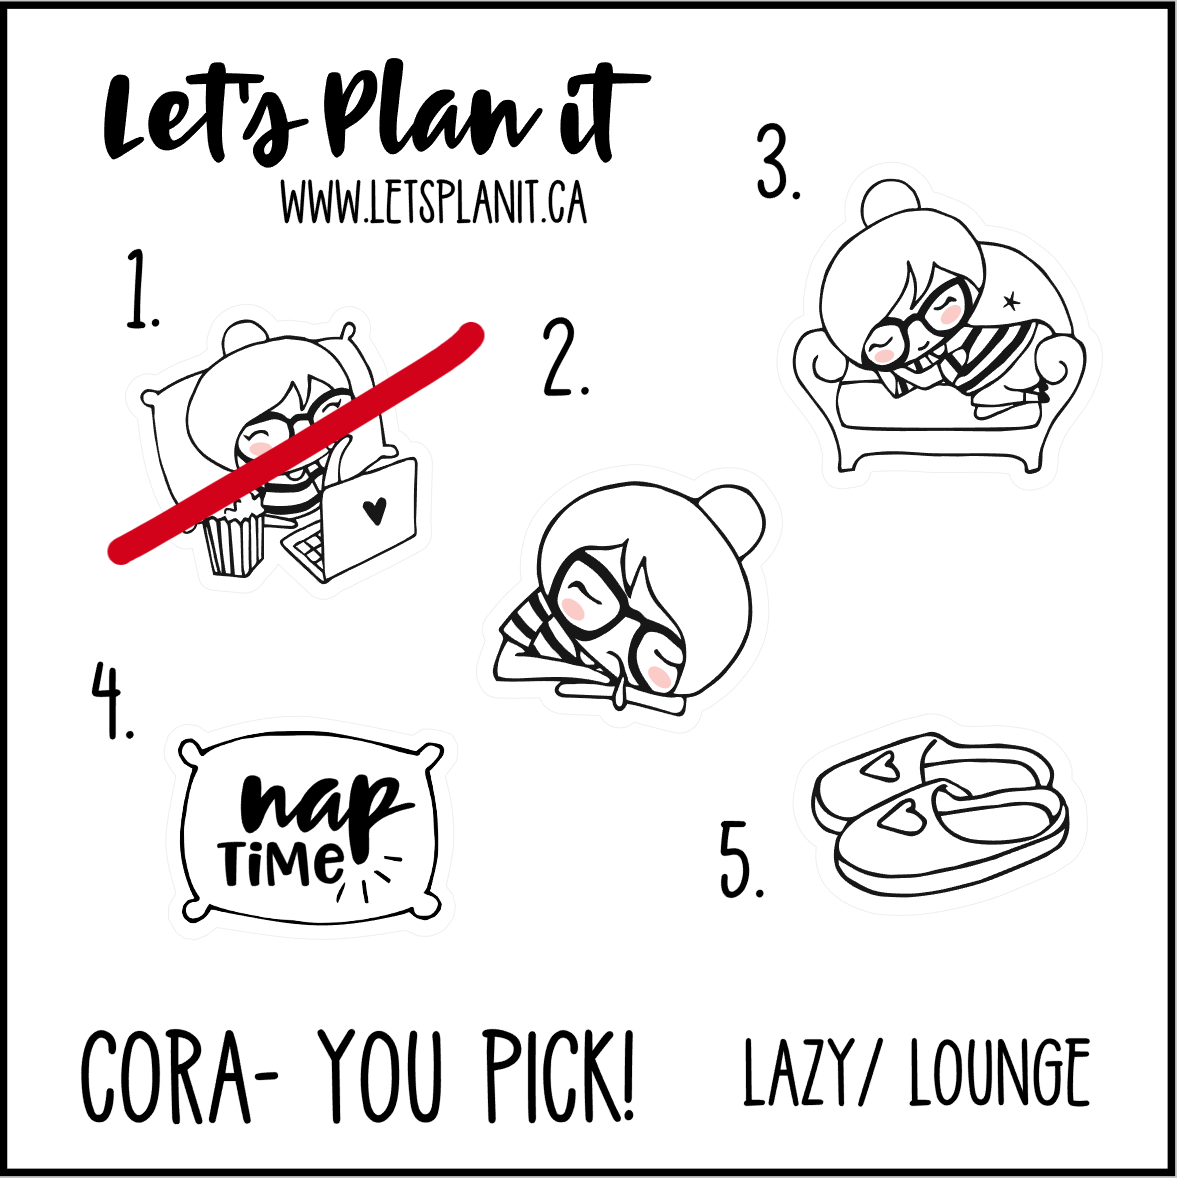 Cora-u-pick- Lazy